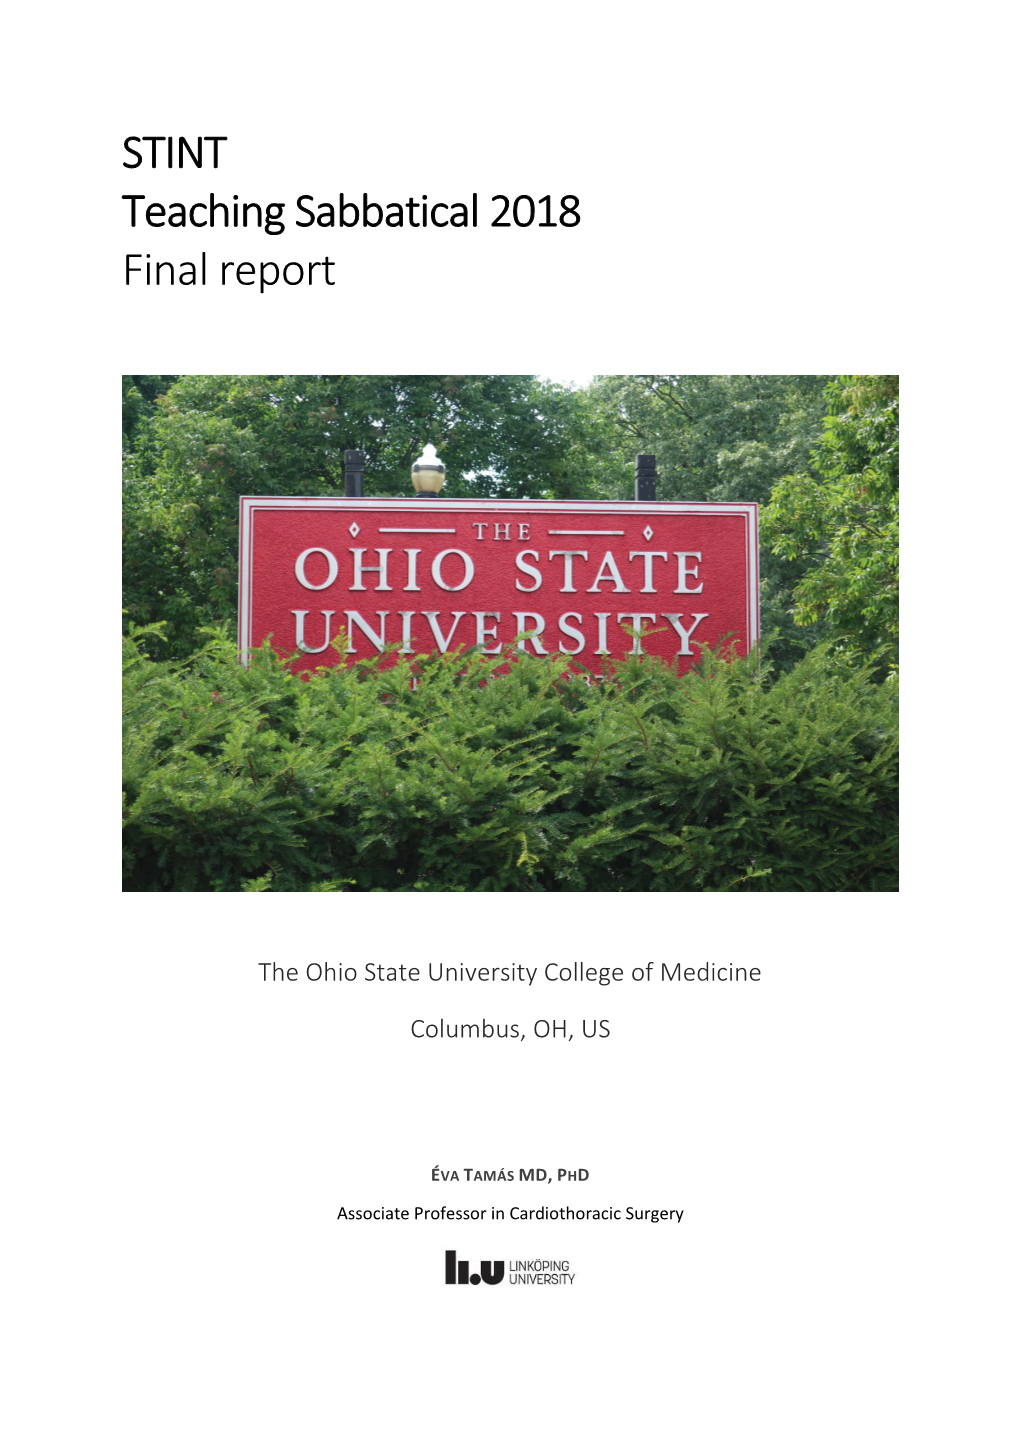 STINT Teaching Sabbatical 2018 Final Report